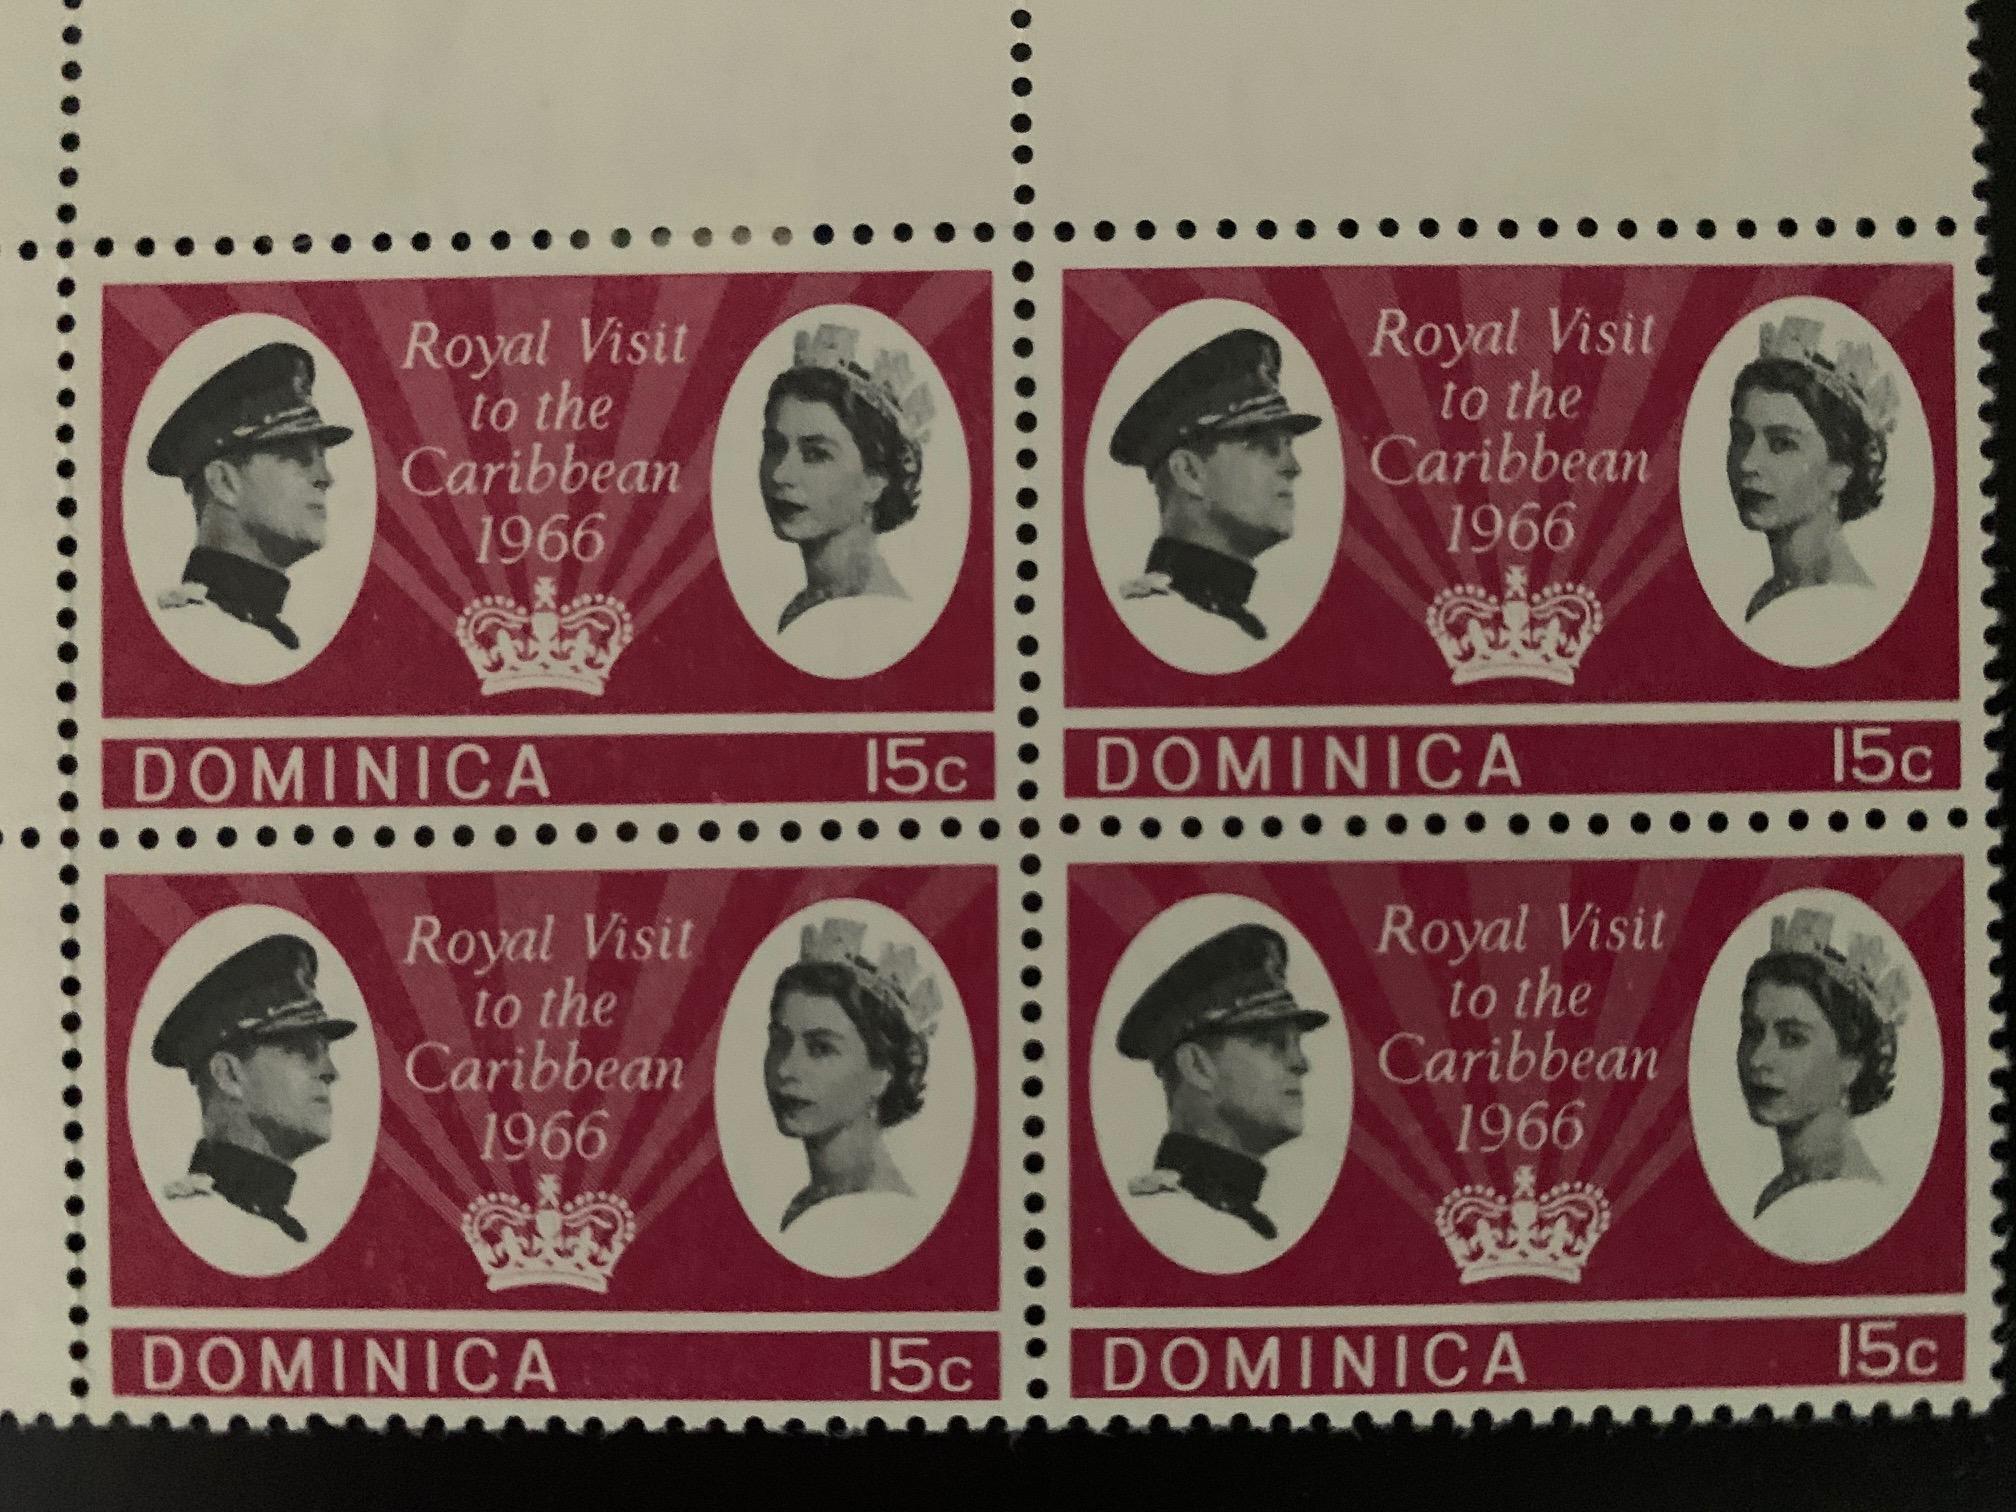 Dominica 1966 Royal Visit stamp - block of 4